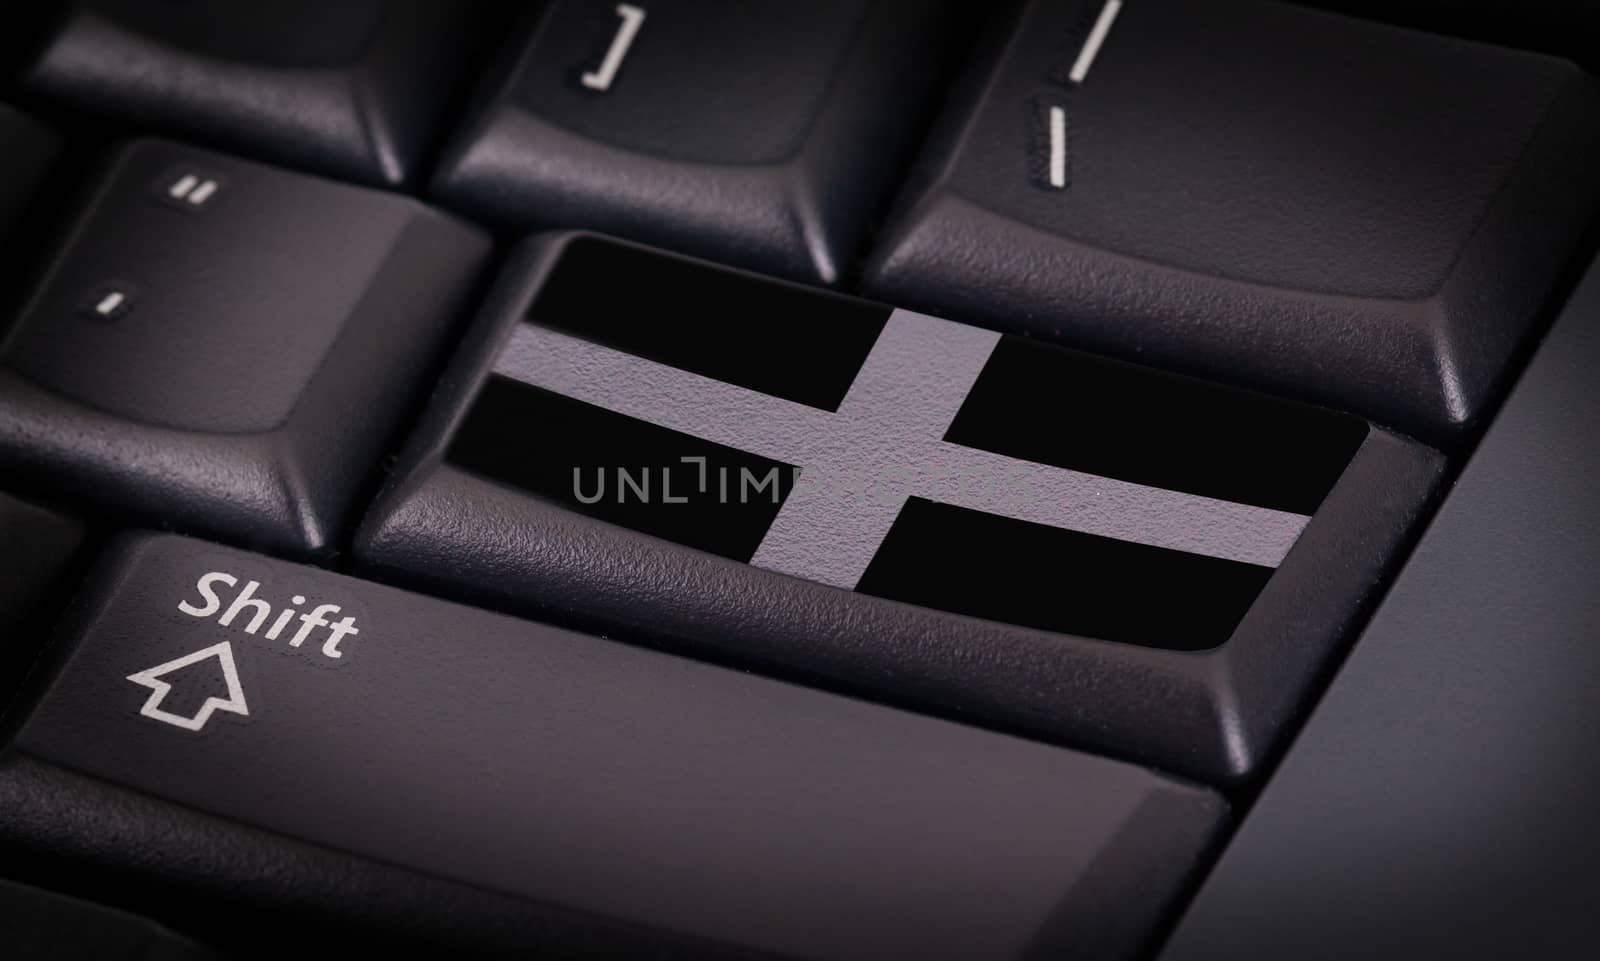 Flag on button keyboard, flag of XXXXX